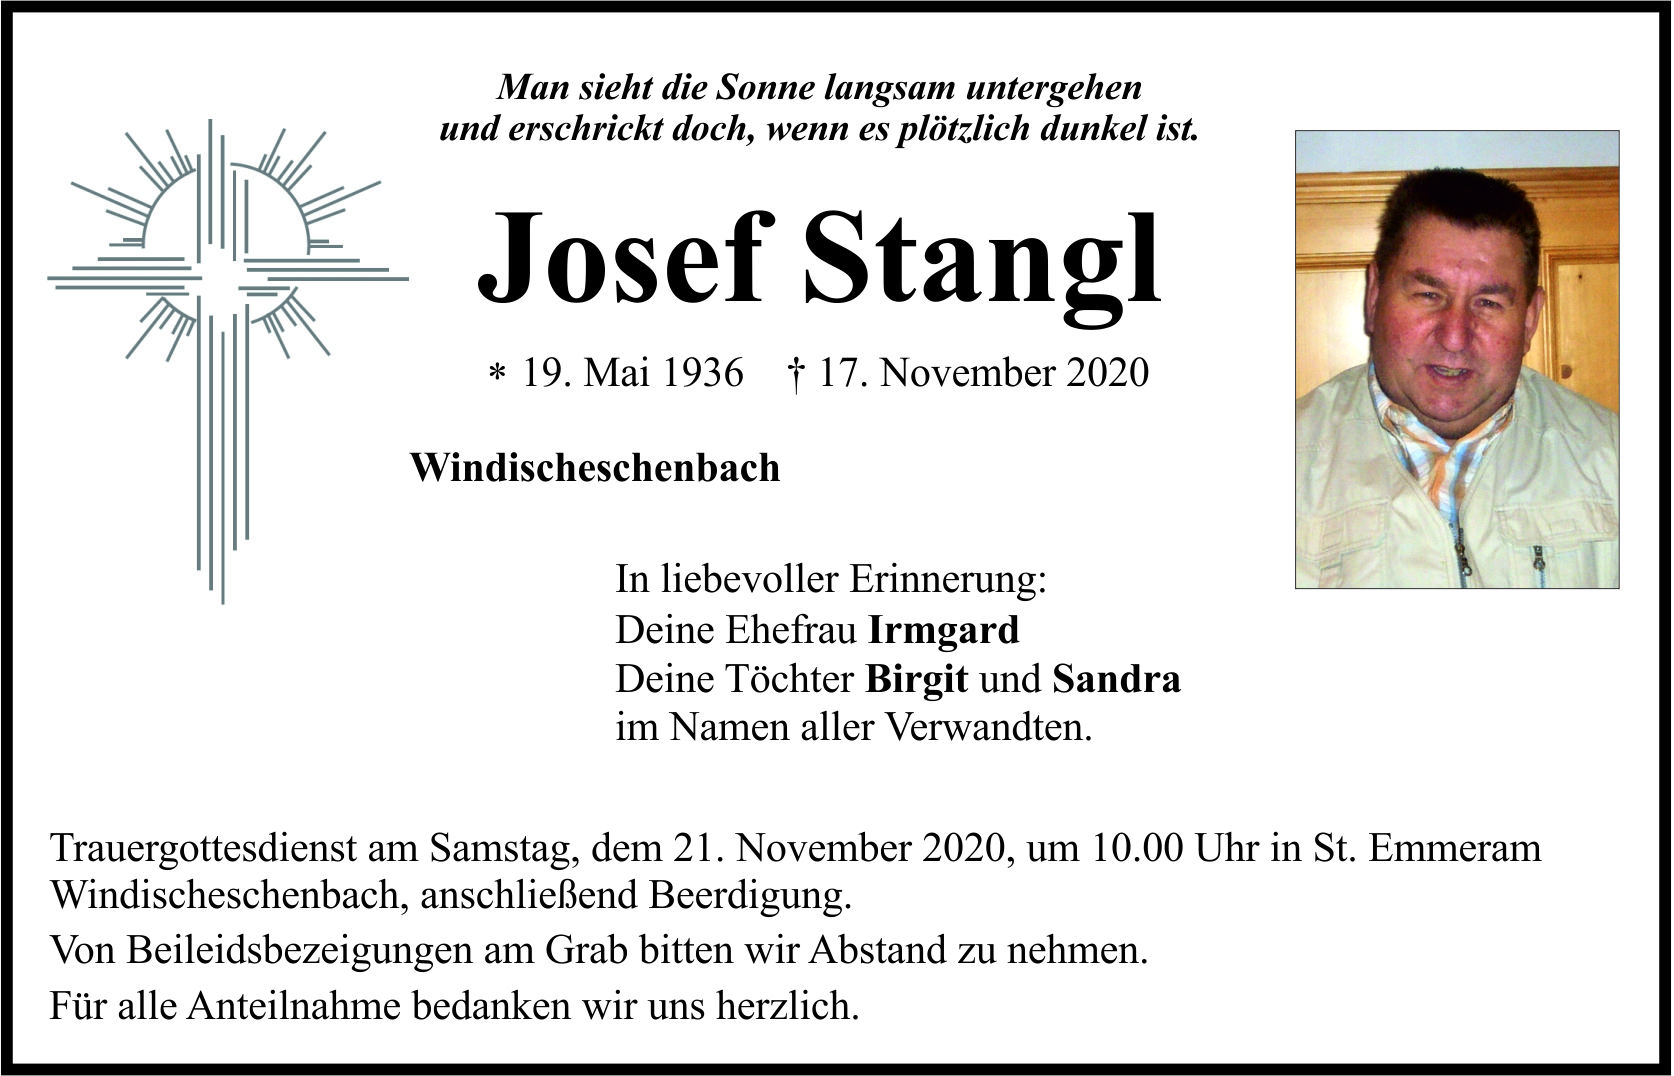 Traueranzeige Josef Stangl, Windischeschenbach